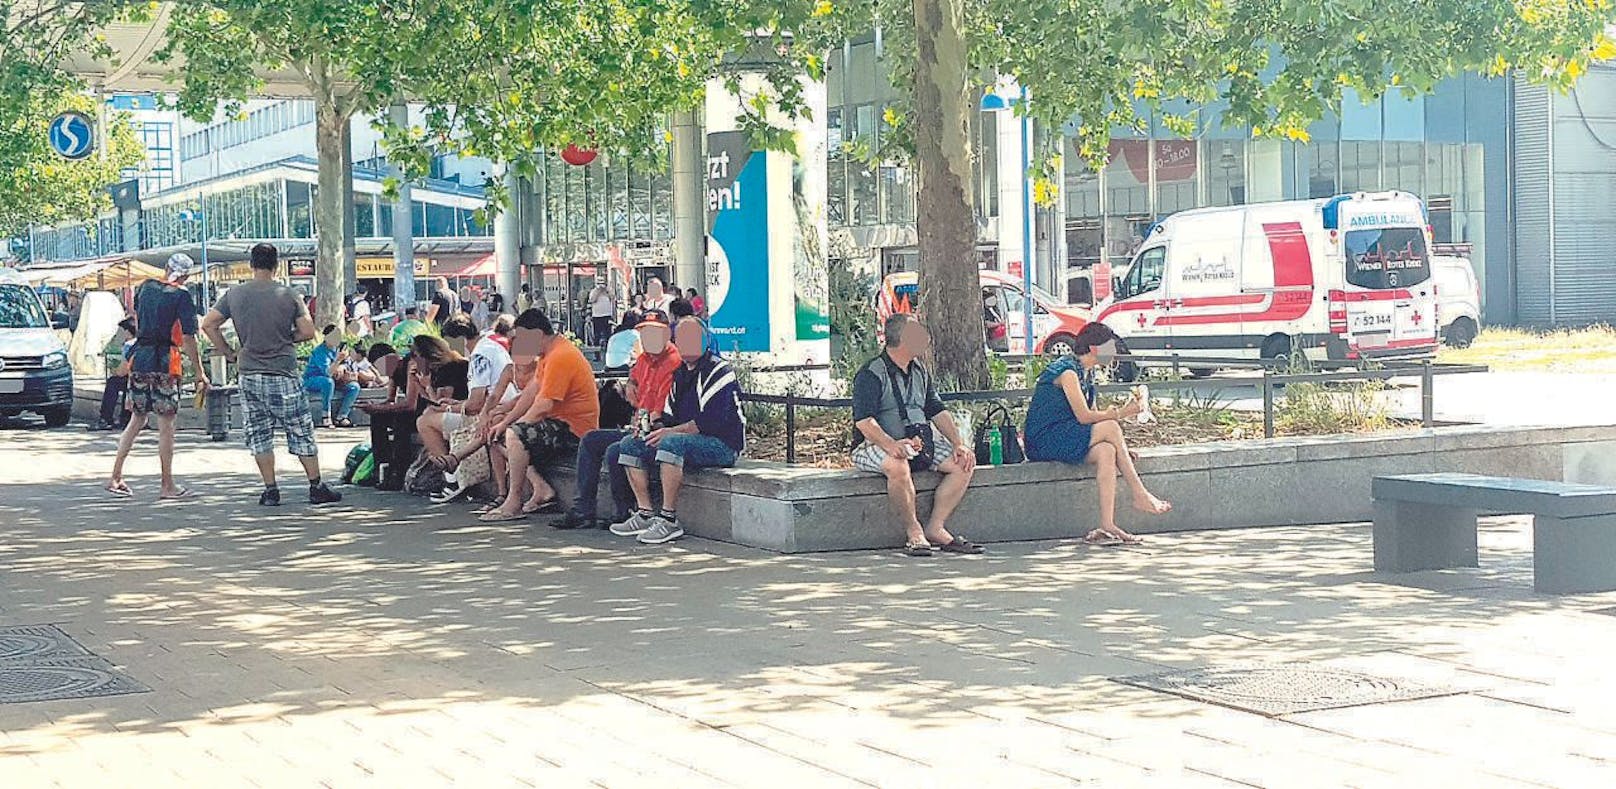 Tägliche Trinkgelage am Franz-Jonas-Platz vorm Bahnhof. (Foto: Dietmar Schwingenschrot)
